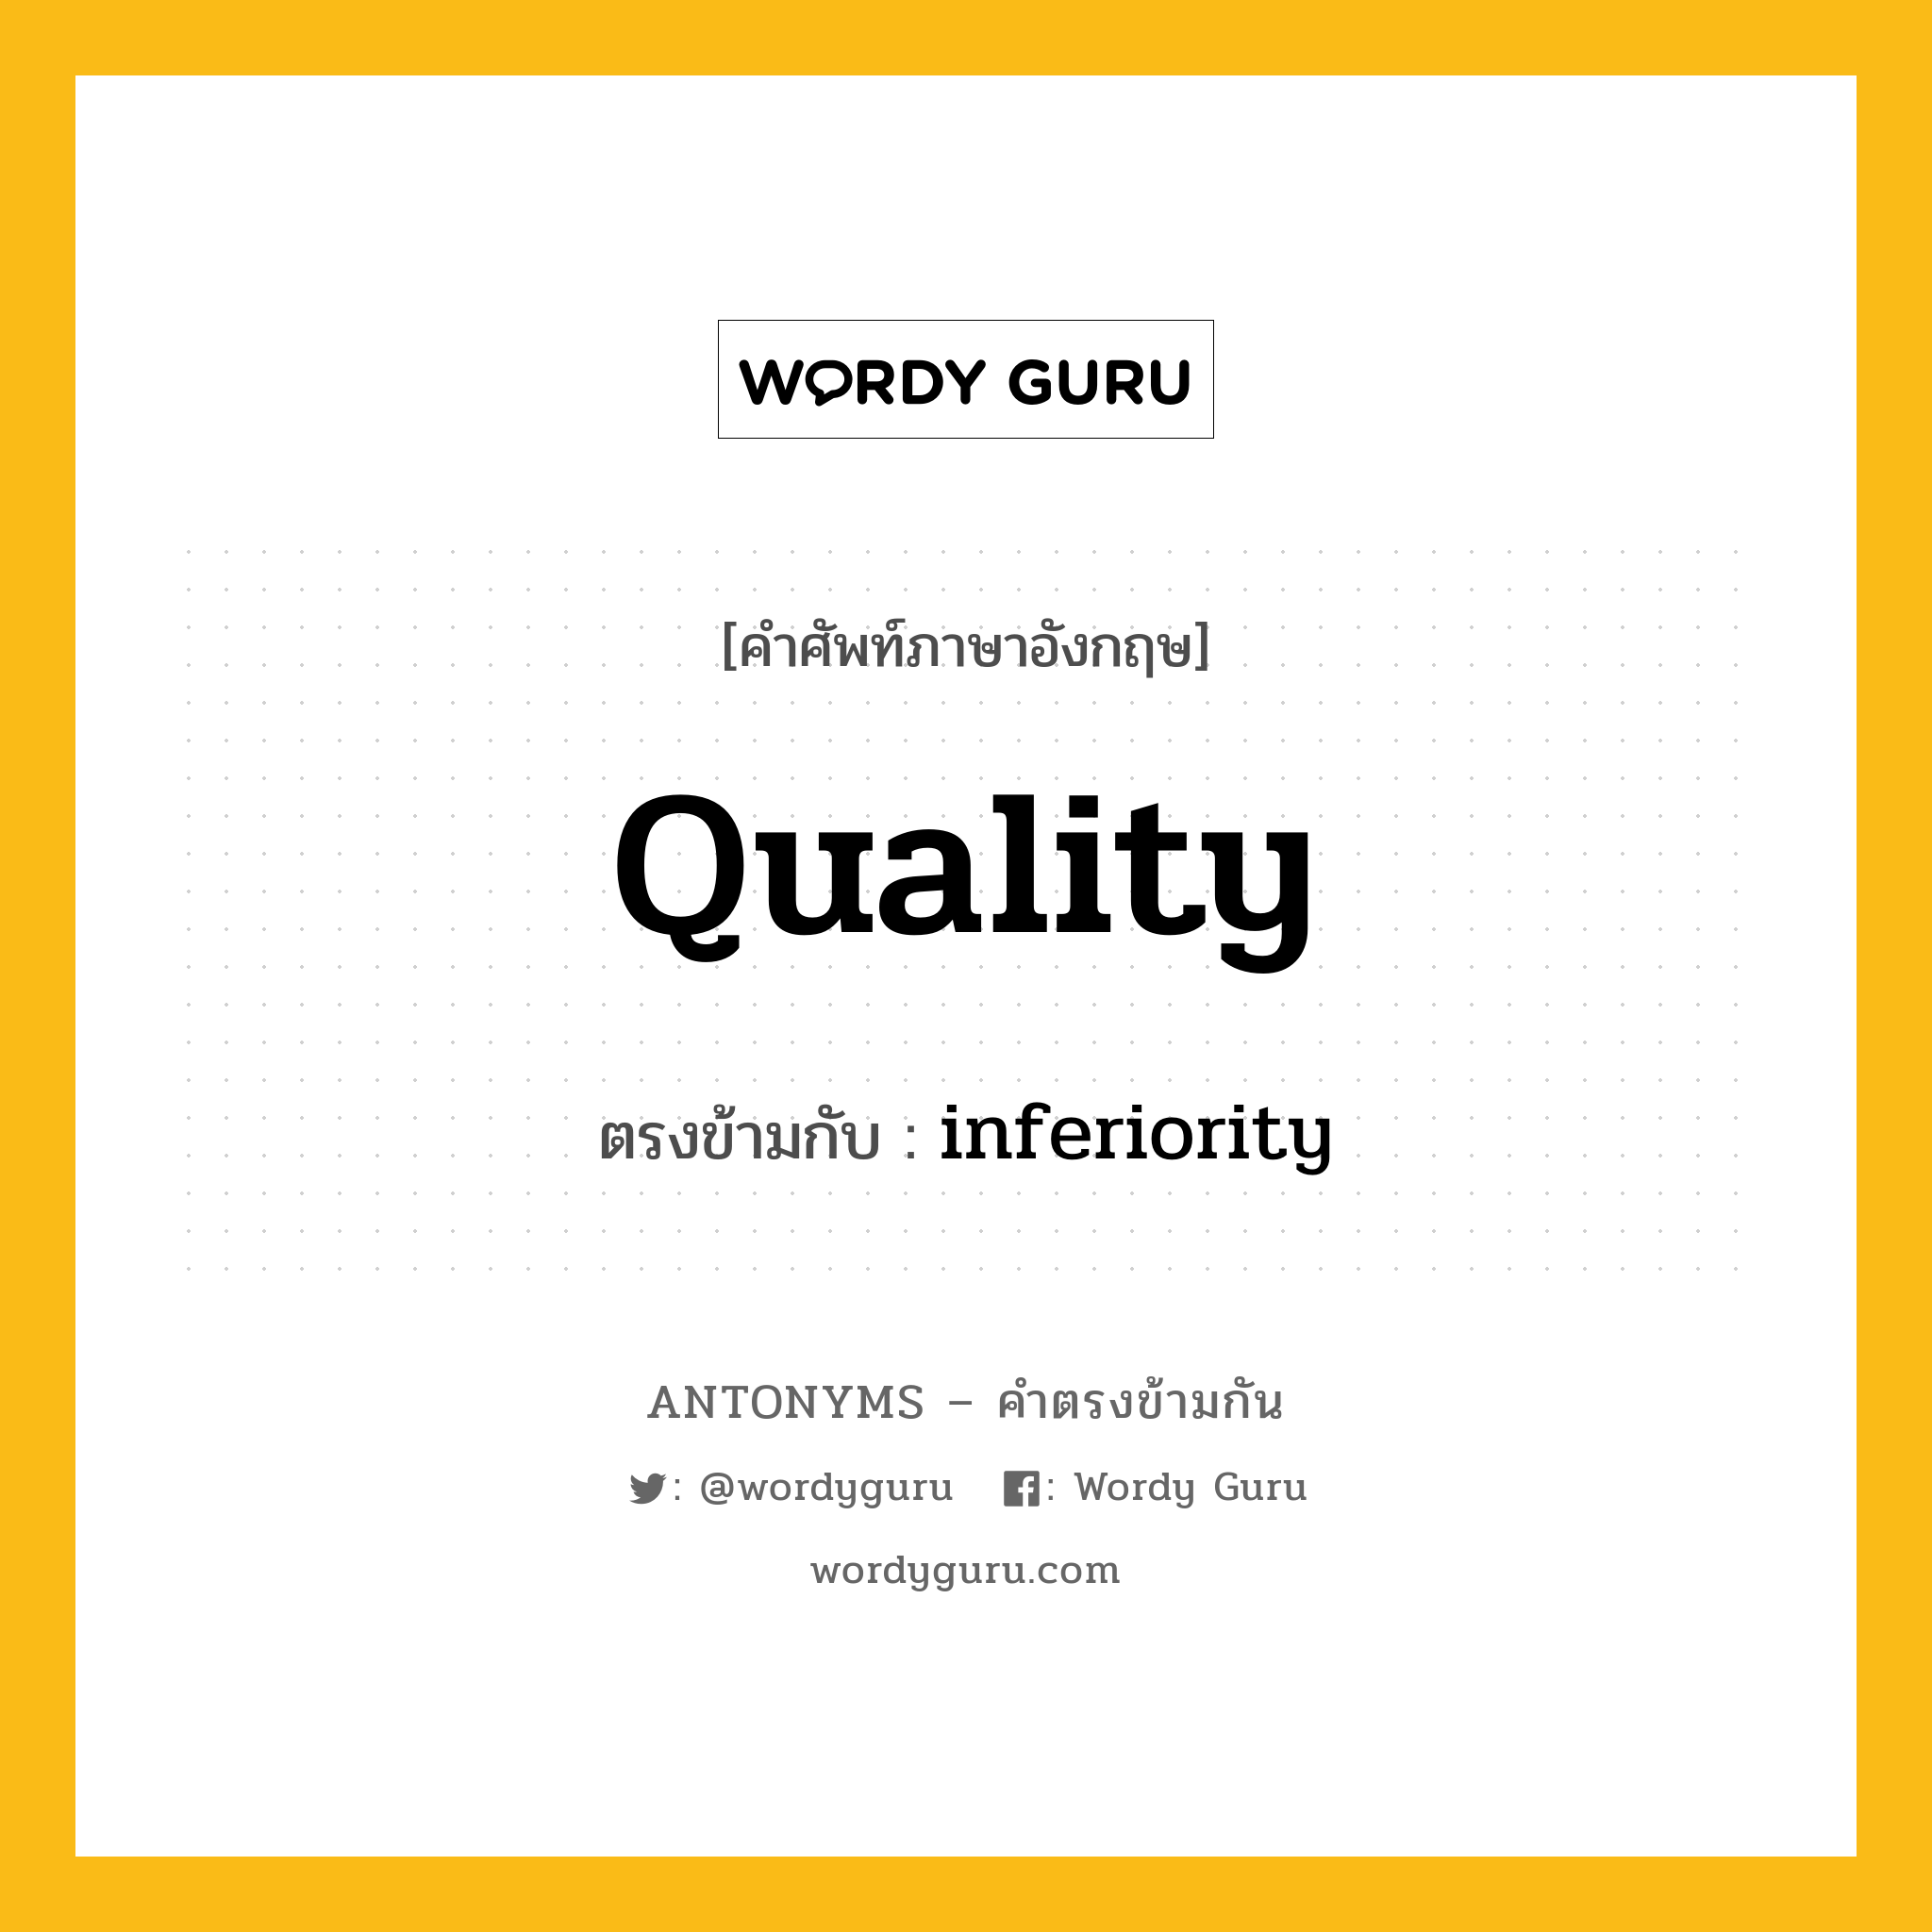 quality เป็นคำตรงข้ามกับคำไหนบ้าง?, คำศัพท์ภาษาอังกฤษ quality ตรงข้ามกับ inferiority หมวด inferiority